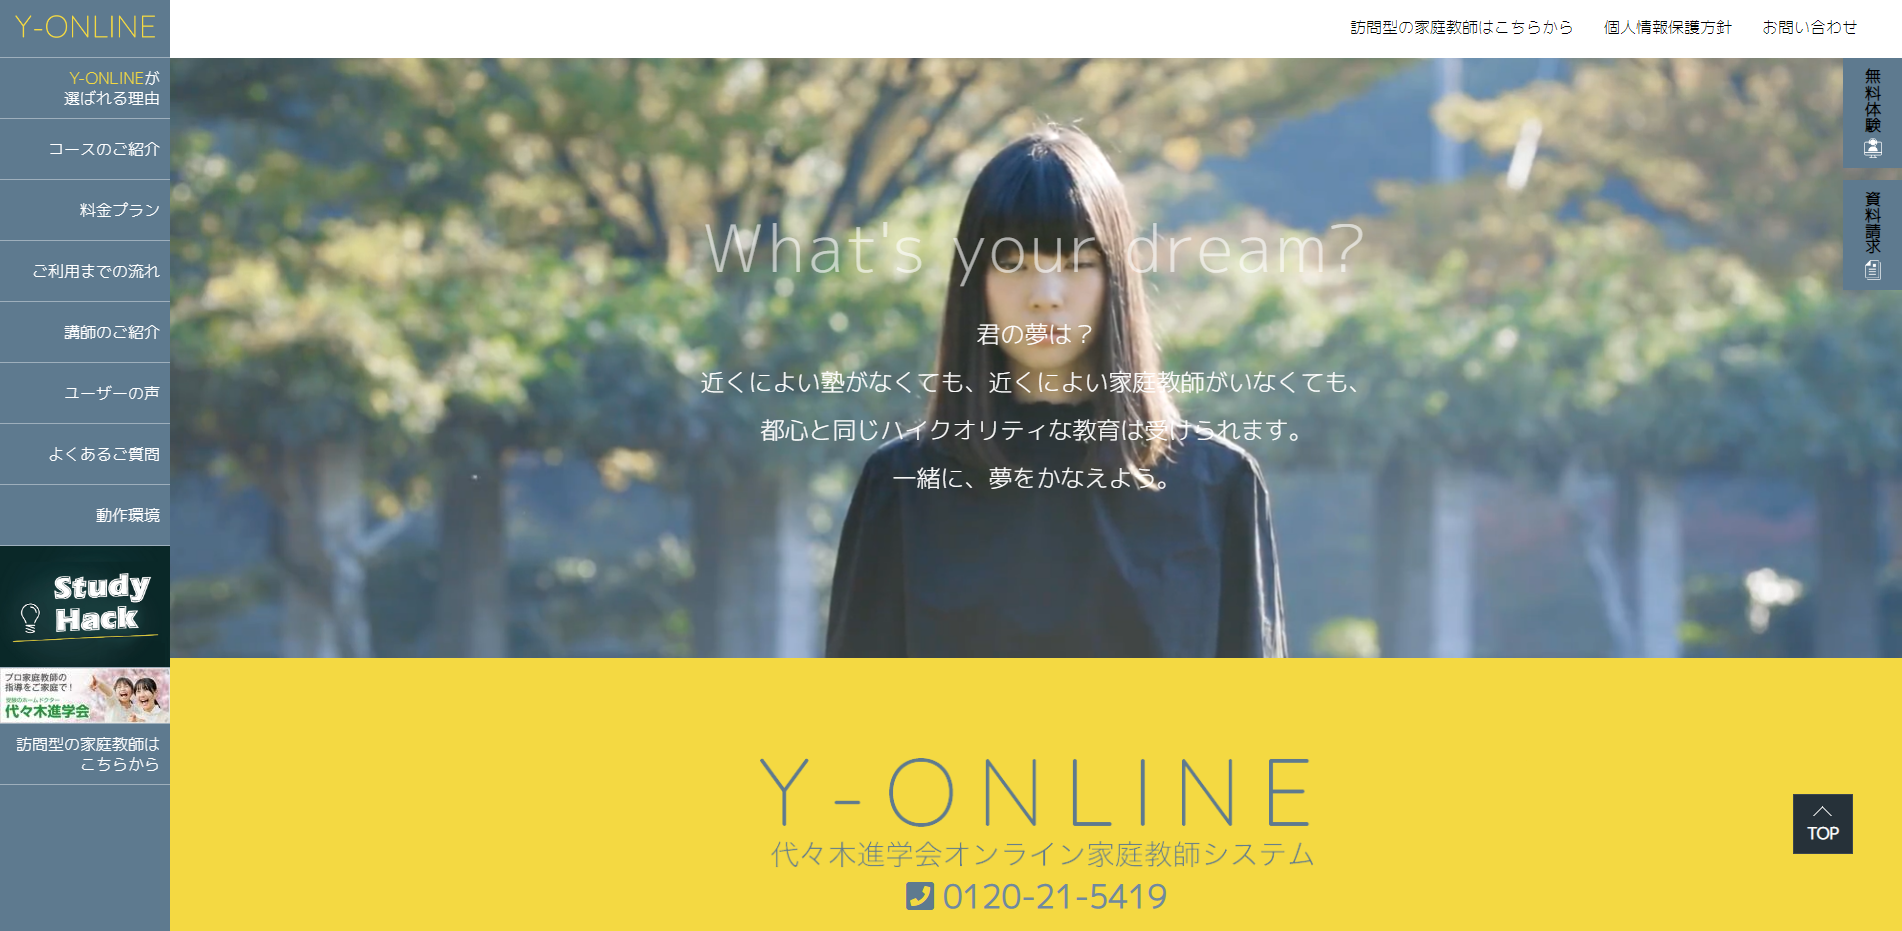 Y-ONLINE(ワイ オンライン)